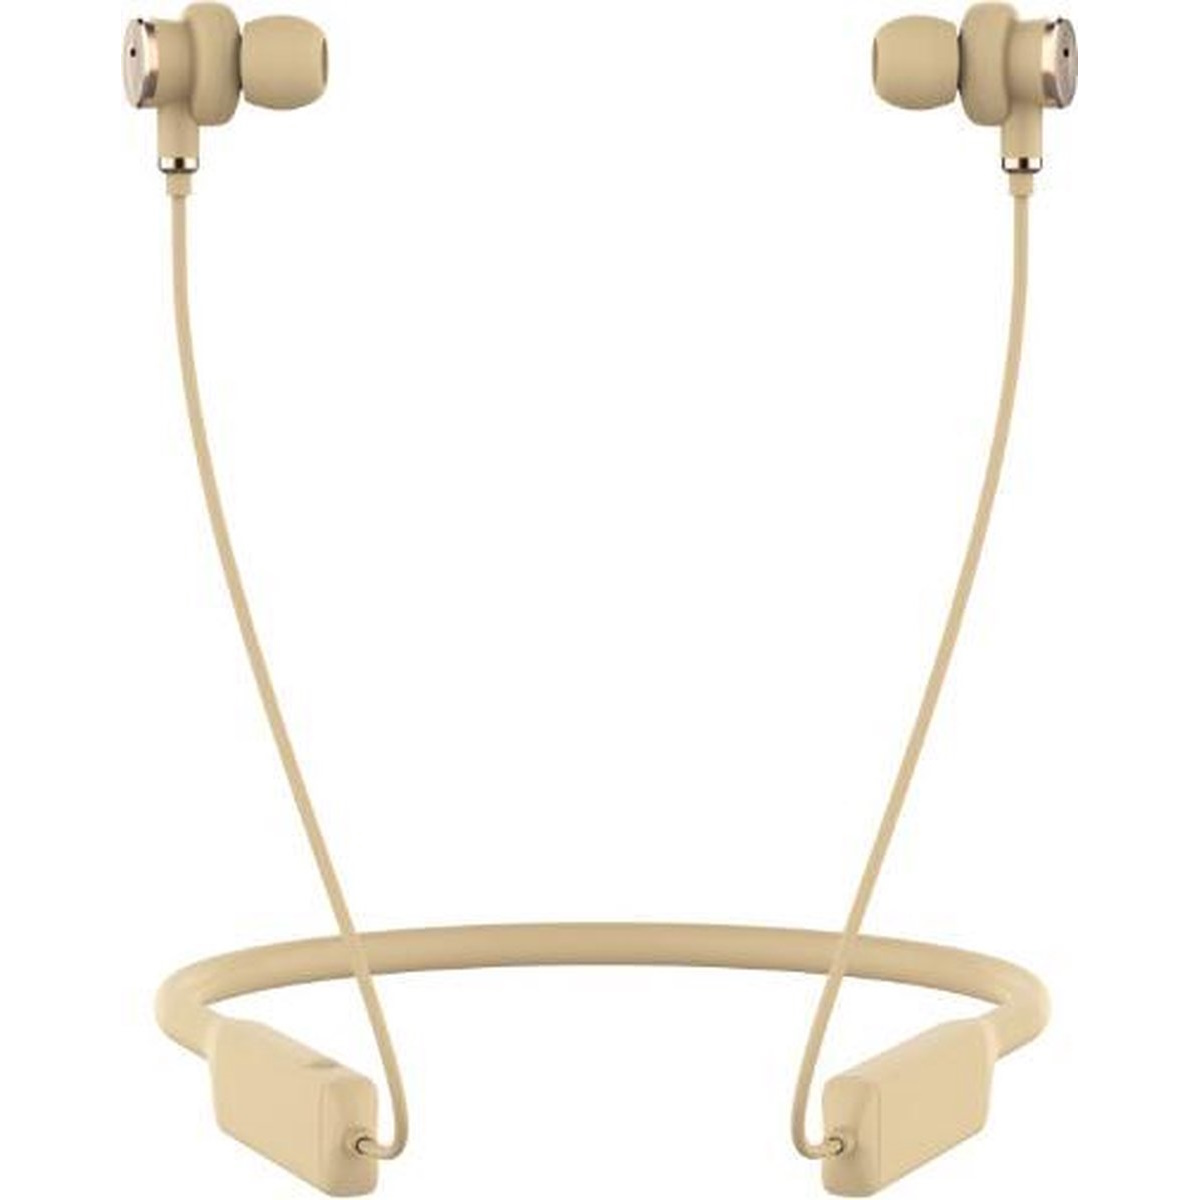 Defunc MUTE Neck-band Earbuds Ασύρματα Ακουστικά με Active Noise Cancellation σε χρυσό χρώμα